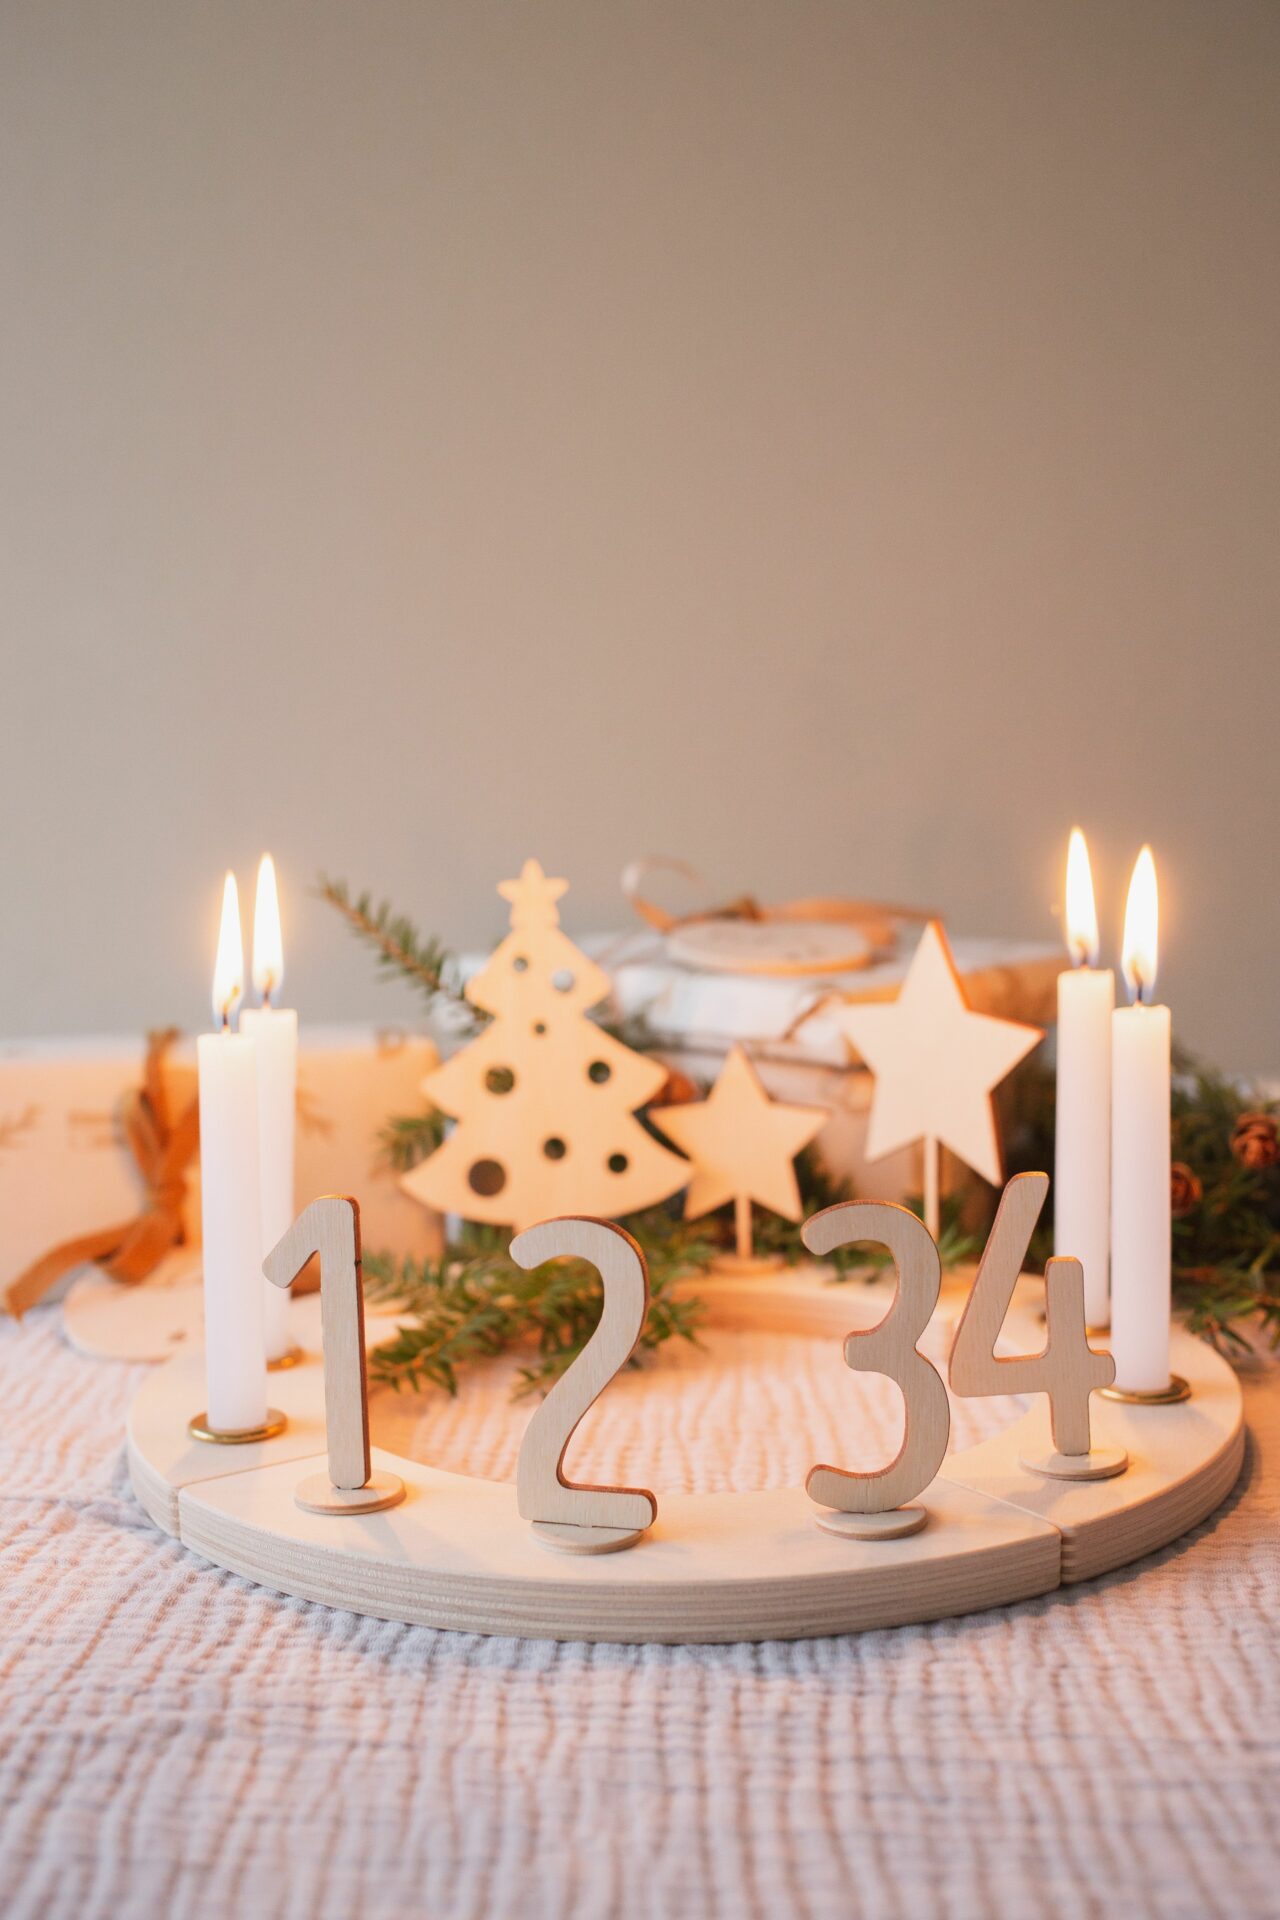 Adventskranz mit Kerzen und Kerzenhaltern.